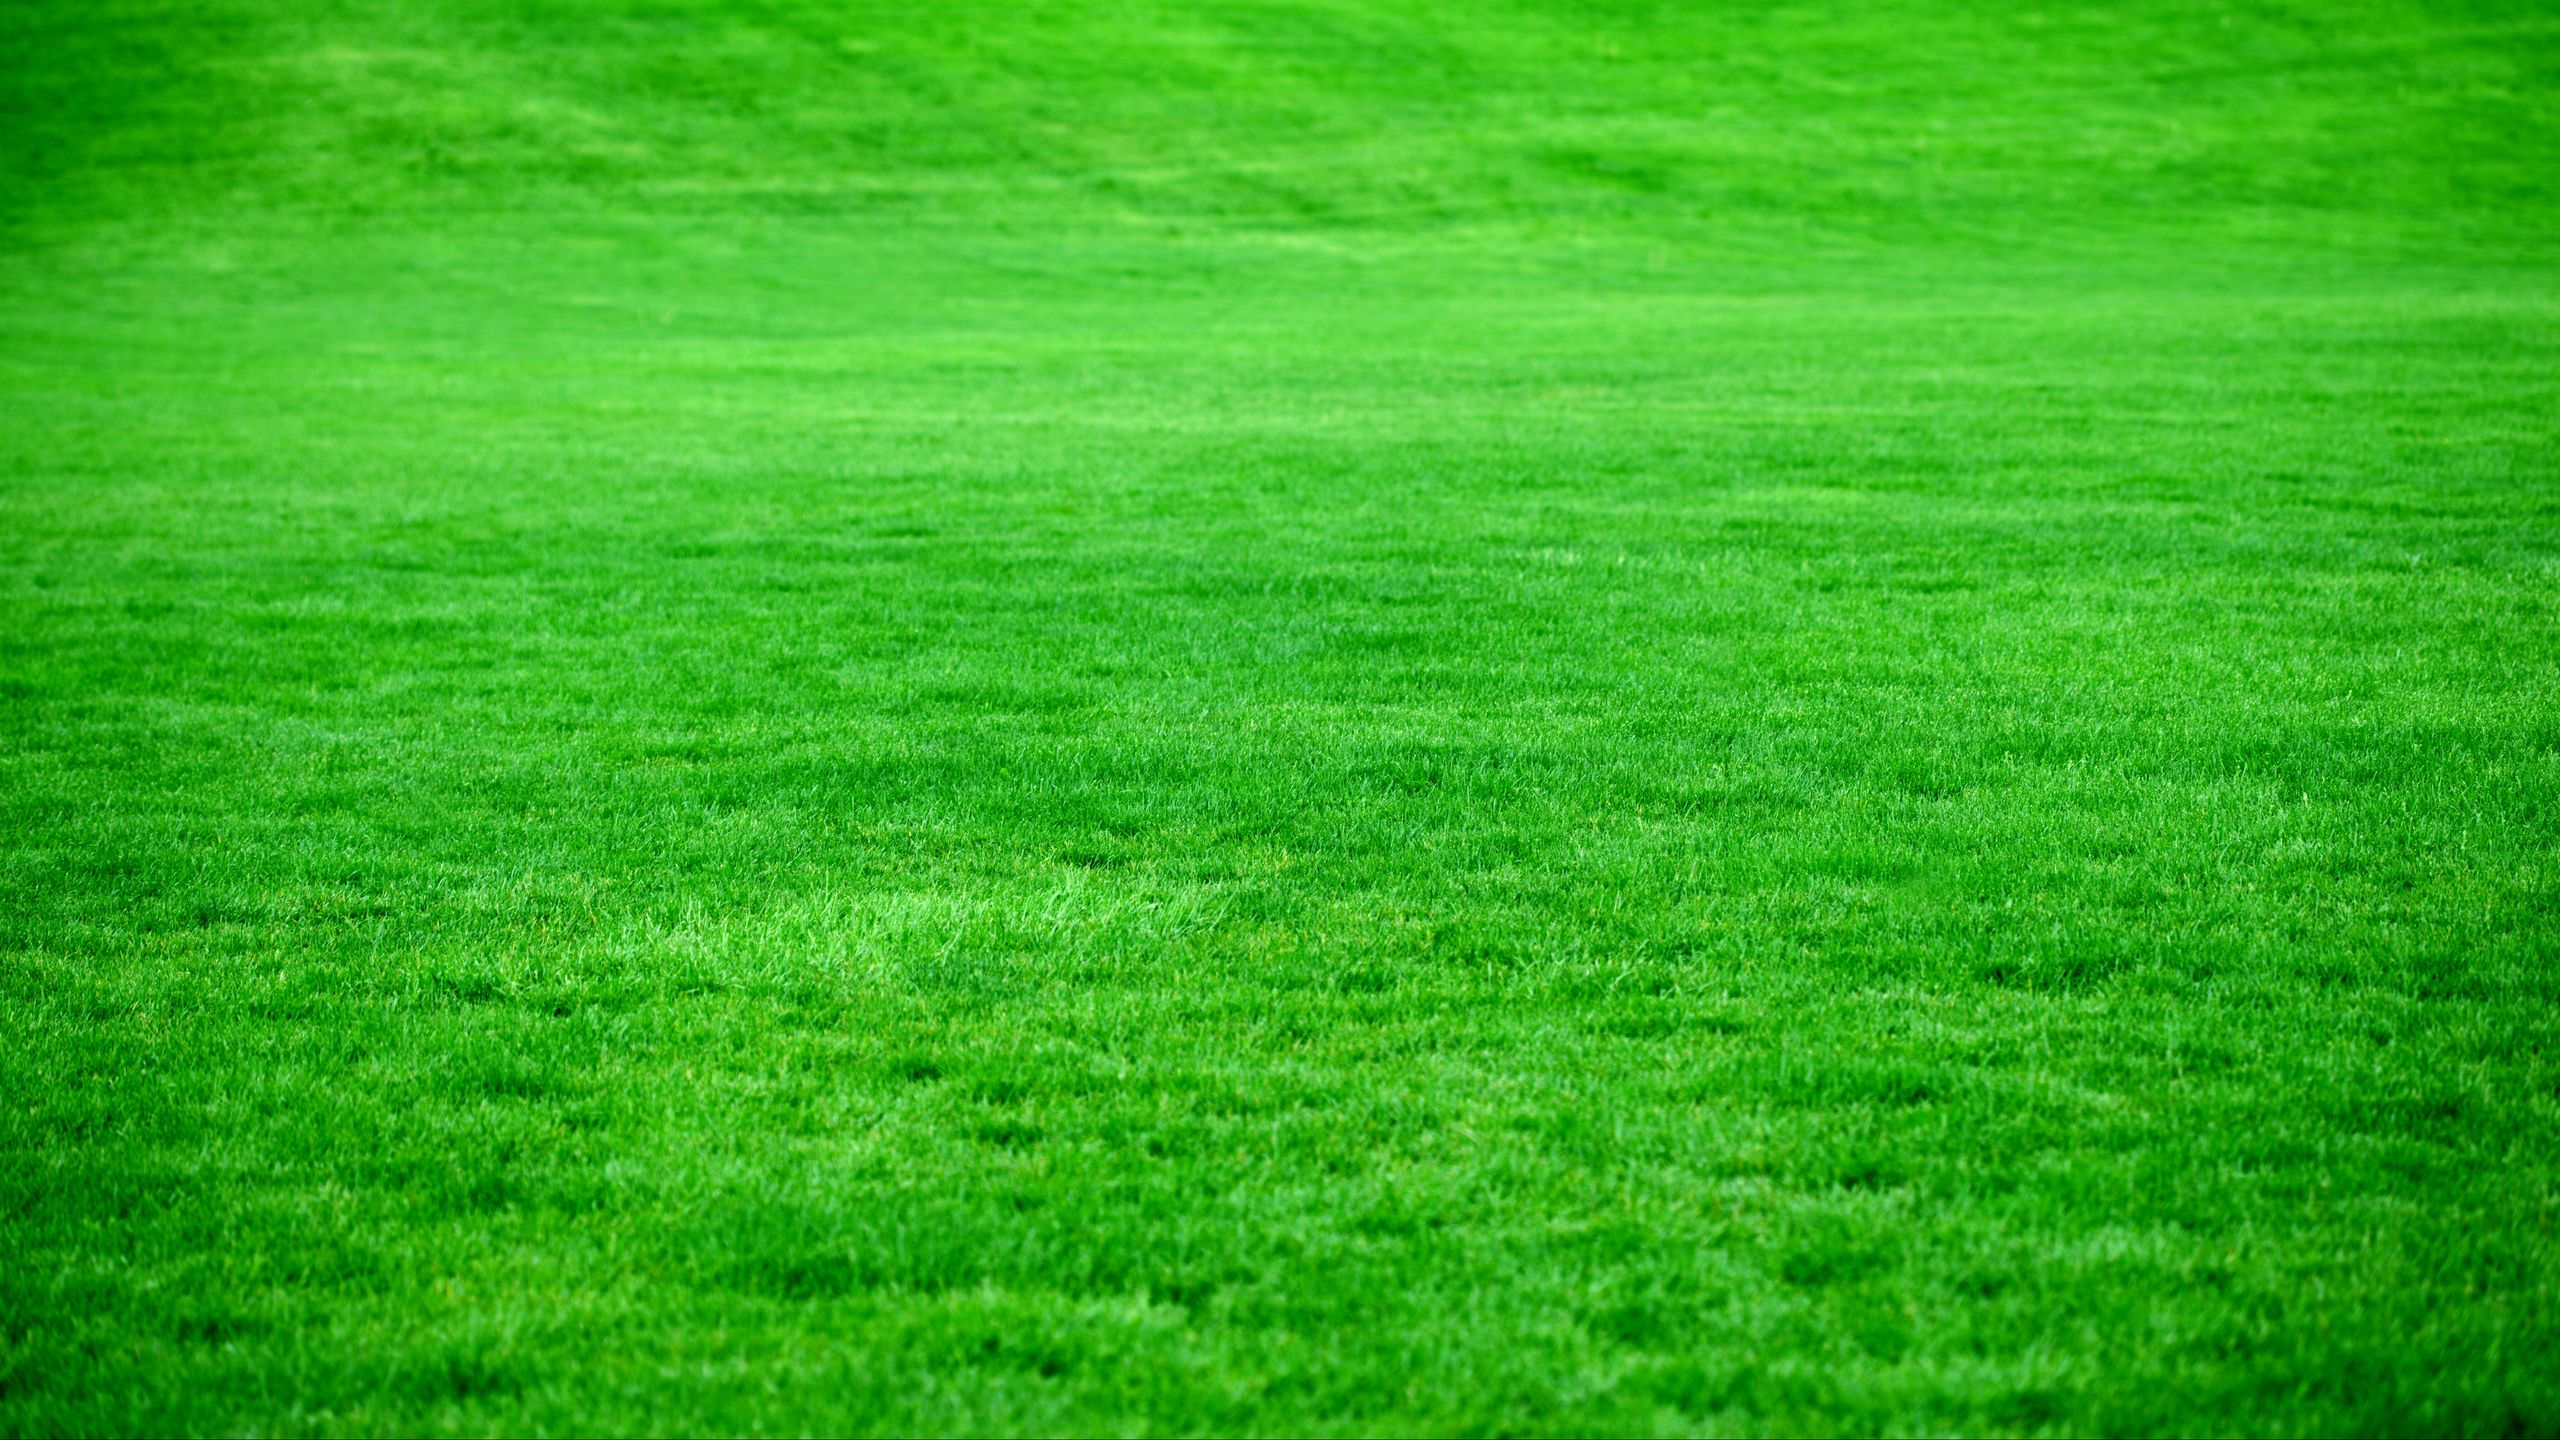 Hình nền lúa mạch, cỏ xanh sáng - một diện mạo tuyệt đẹp tỏa sáng trên màn hình của bạn. Hãy cùng thưởng thức những khung cảnh đại ngàn, thoả sức khám phá hàng ngàn bức ảnh được chất lượng thượng hạng và sáng tạo độc đáo.